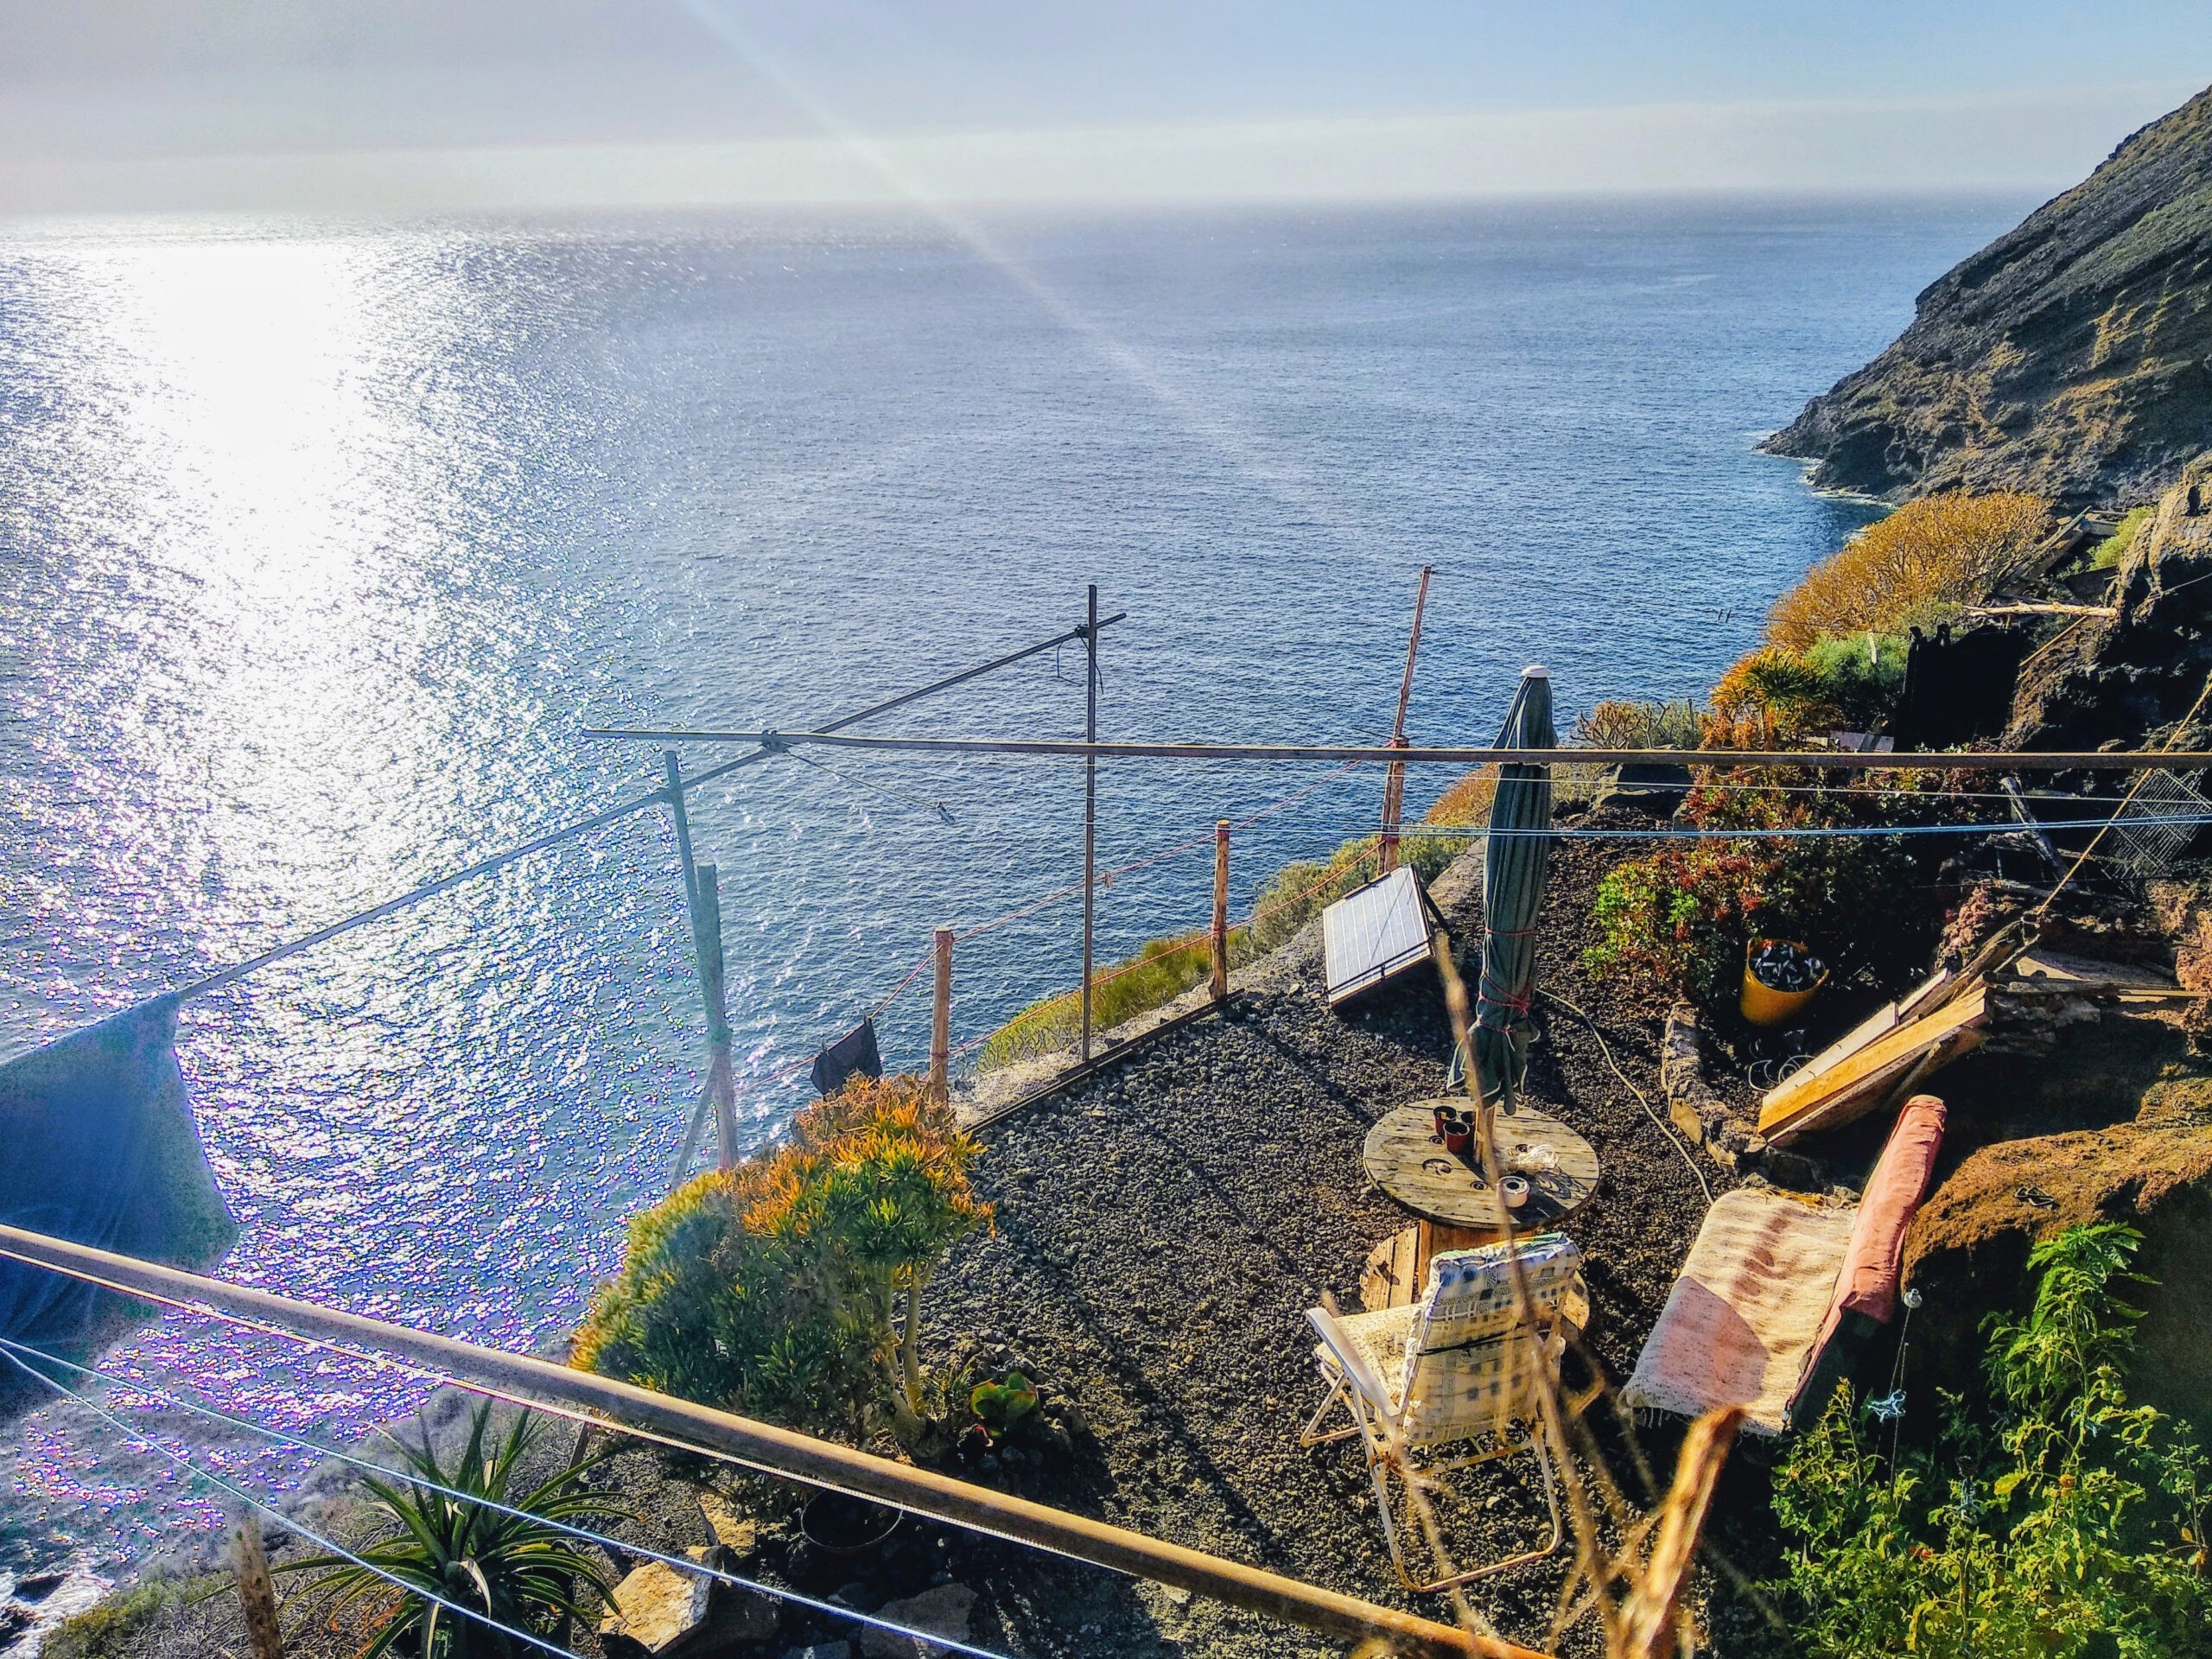 Salon lub taras wykopany w skale z widokiem na morze w miejscowości Puerto de Puntagorda, wyspa La Palma, Wyspy Kanaryjskie, Hiszpania